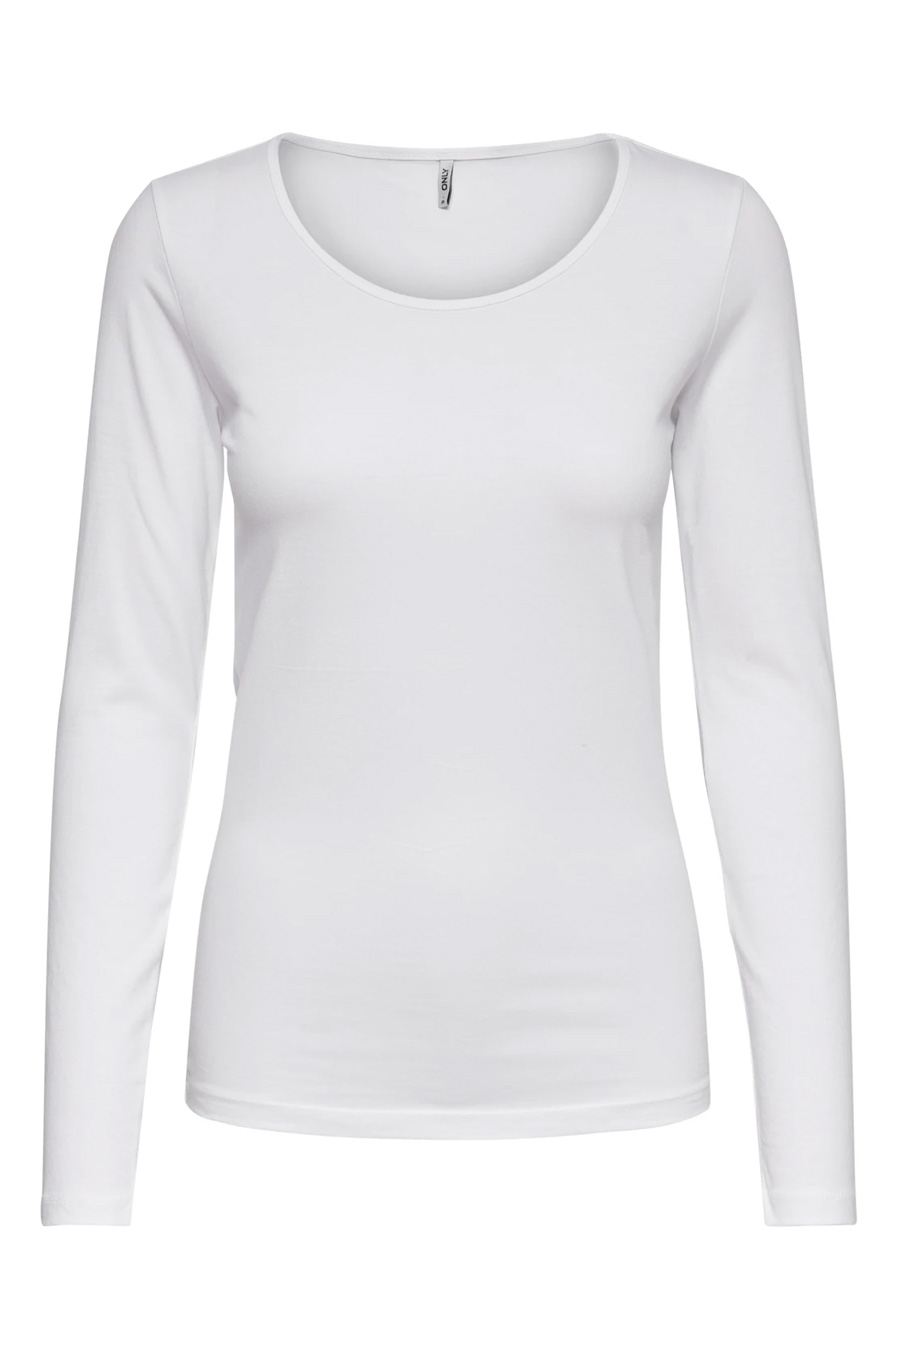 T-krekls ar garām rokām ONLY 15204712-White